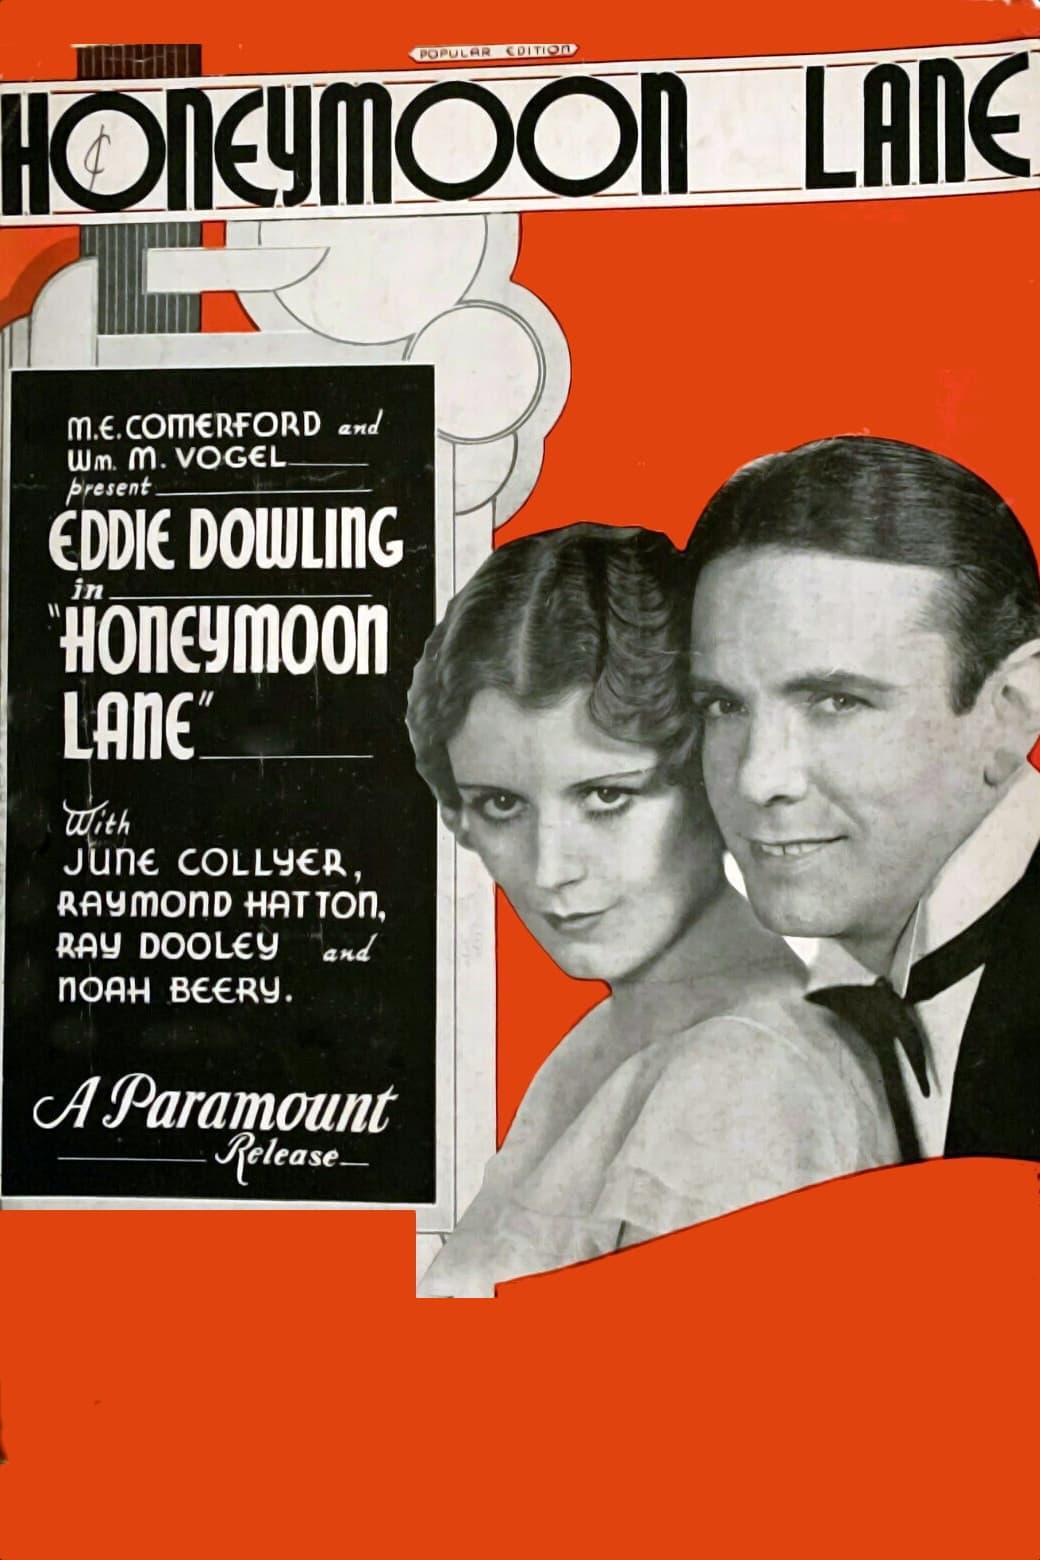 Honeymoon Lane poster